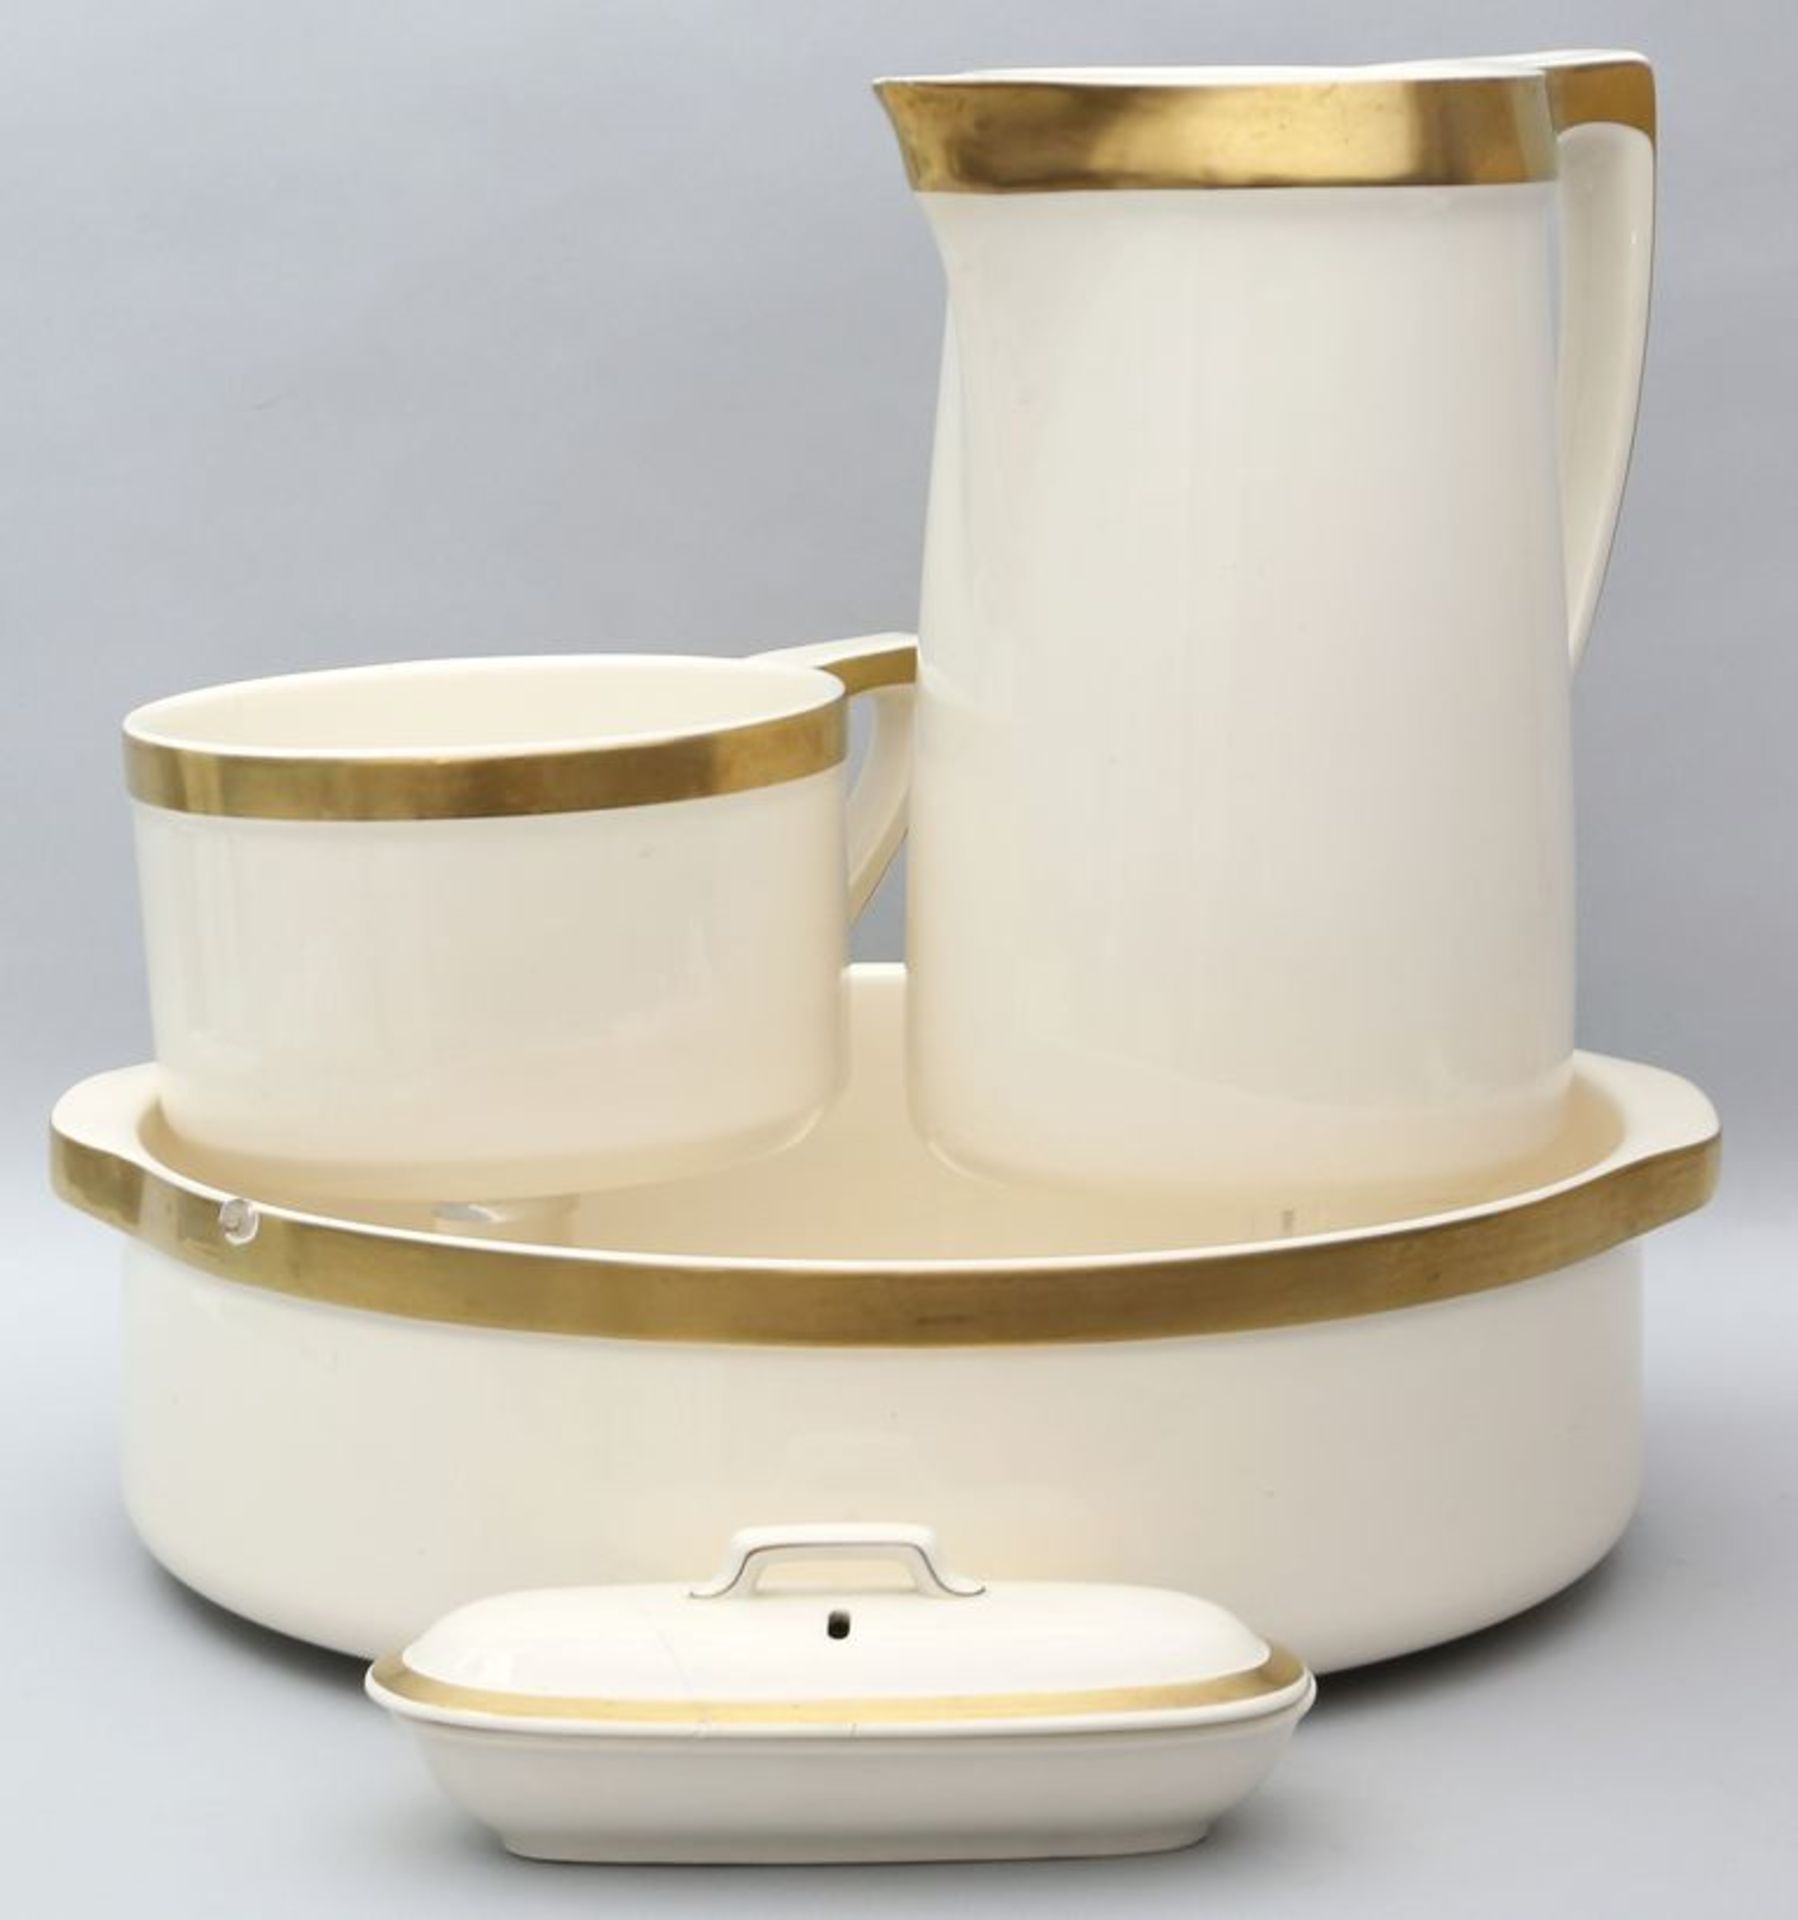 Waschset, Villeroy & Boch, 4-teilig. Keramik mit beigem Fond und Goldband. Bestehend a